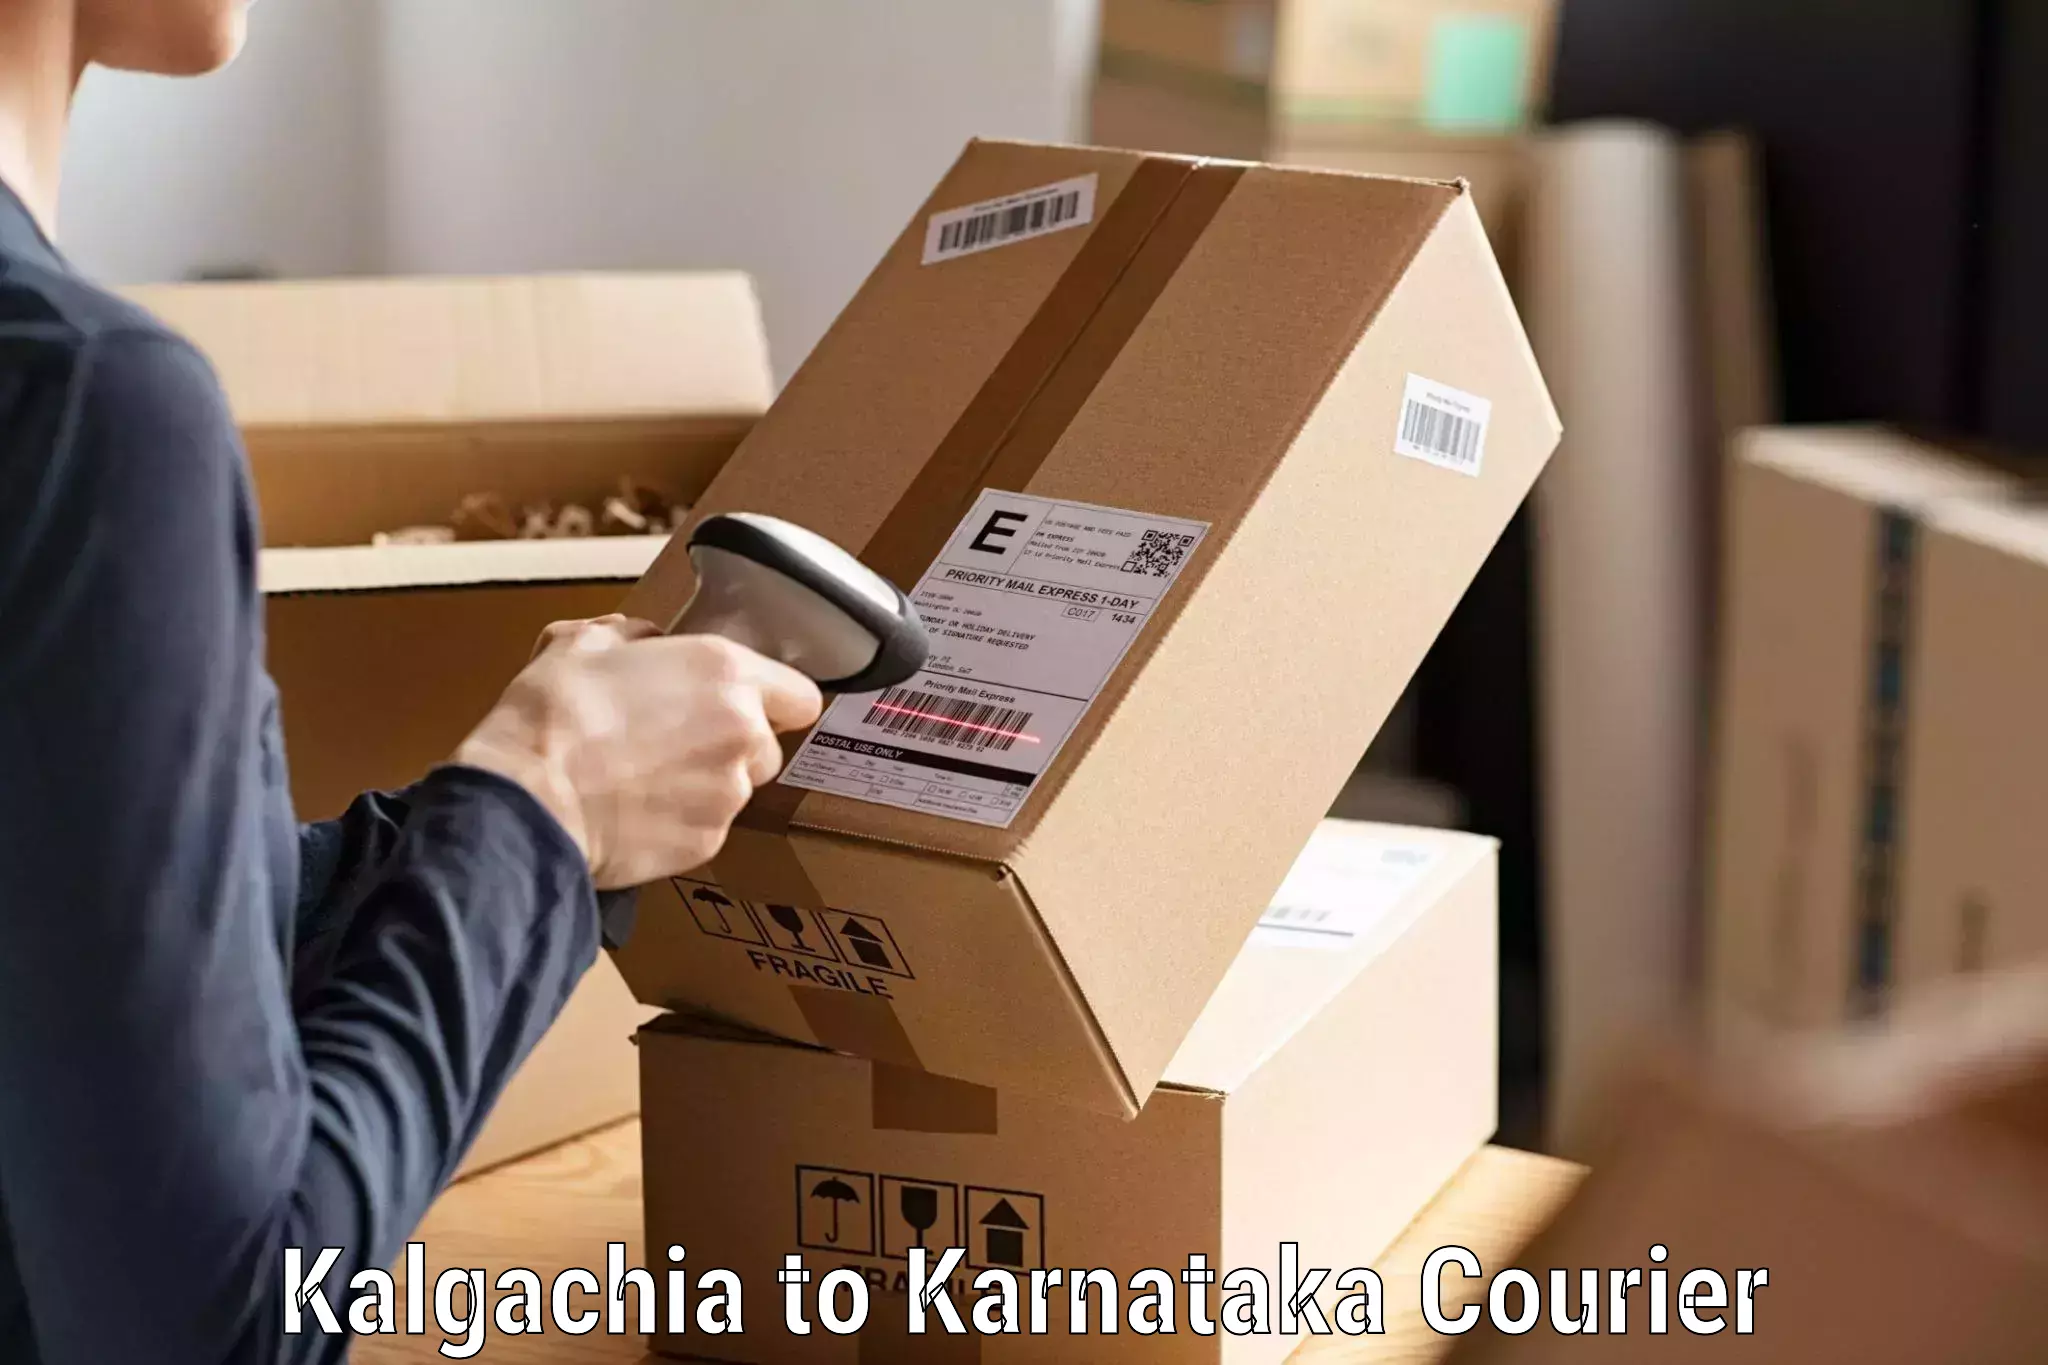 Customer-friendly courier services in Kalgachia to Karnataka